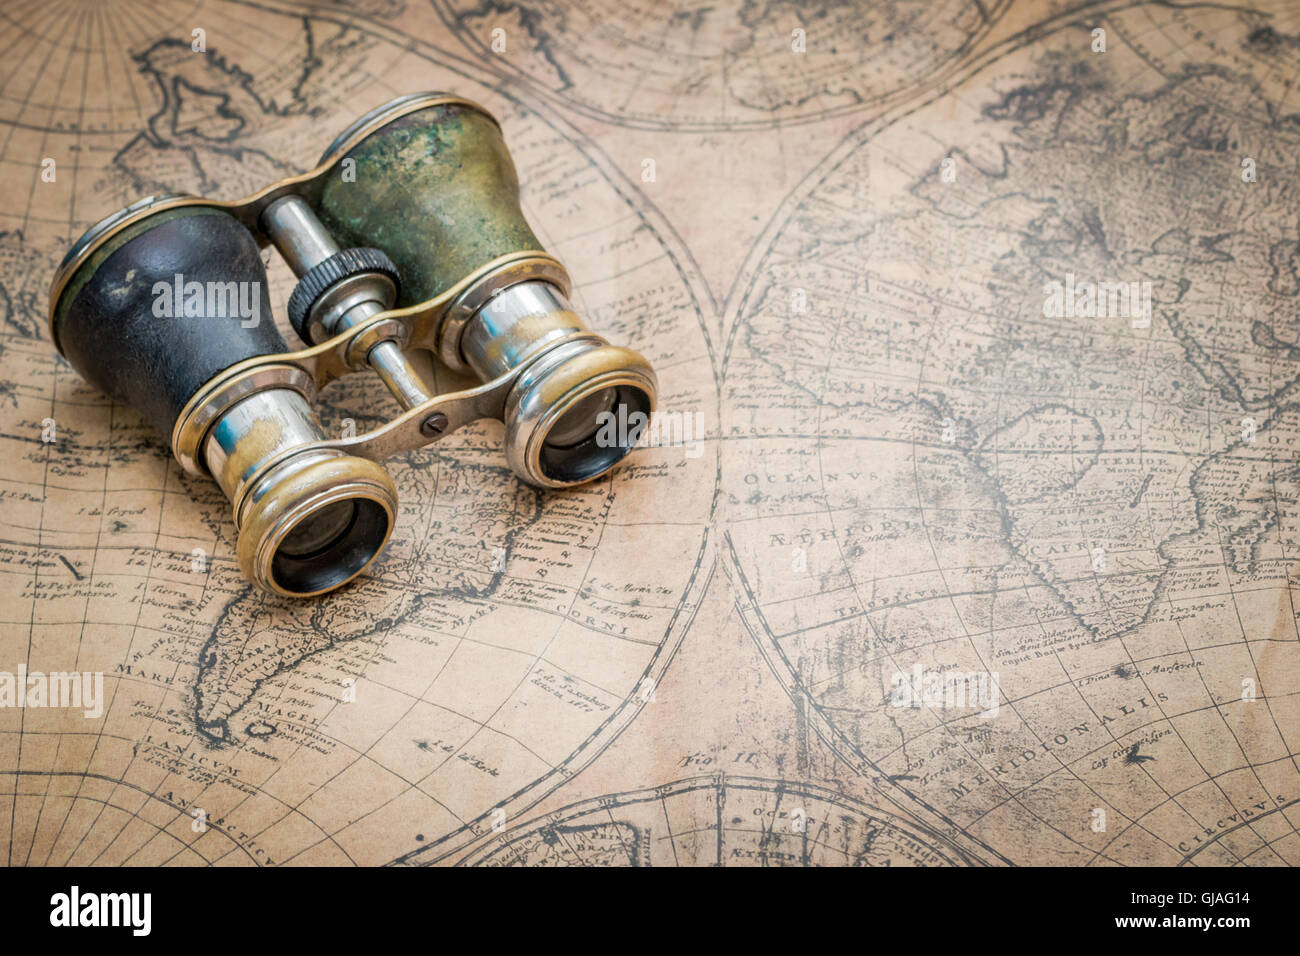 Paire de jumelles anciennes vintage sur une carte du monde, ce qui suggère l'exploration ou de voyage Banque D'Images